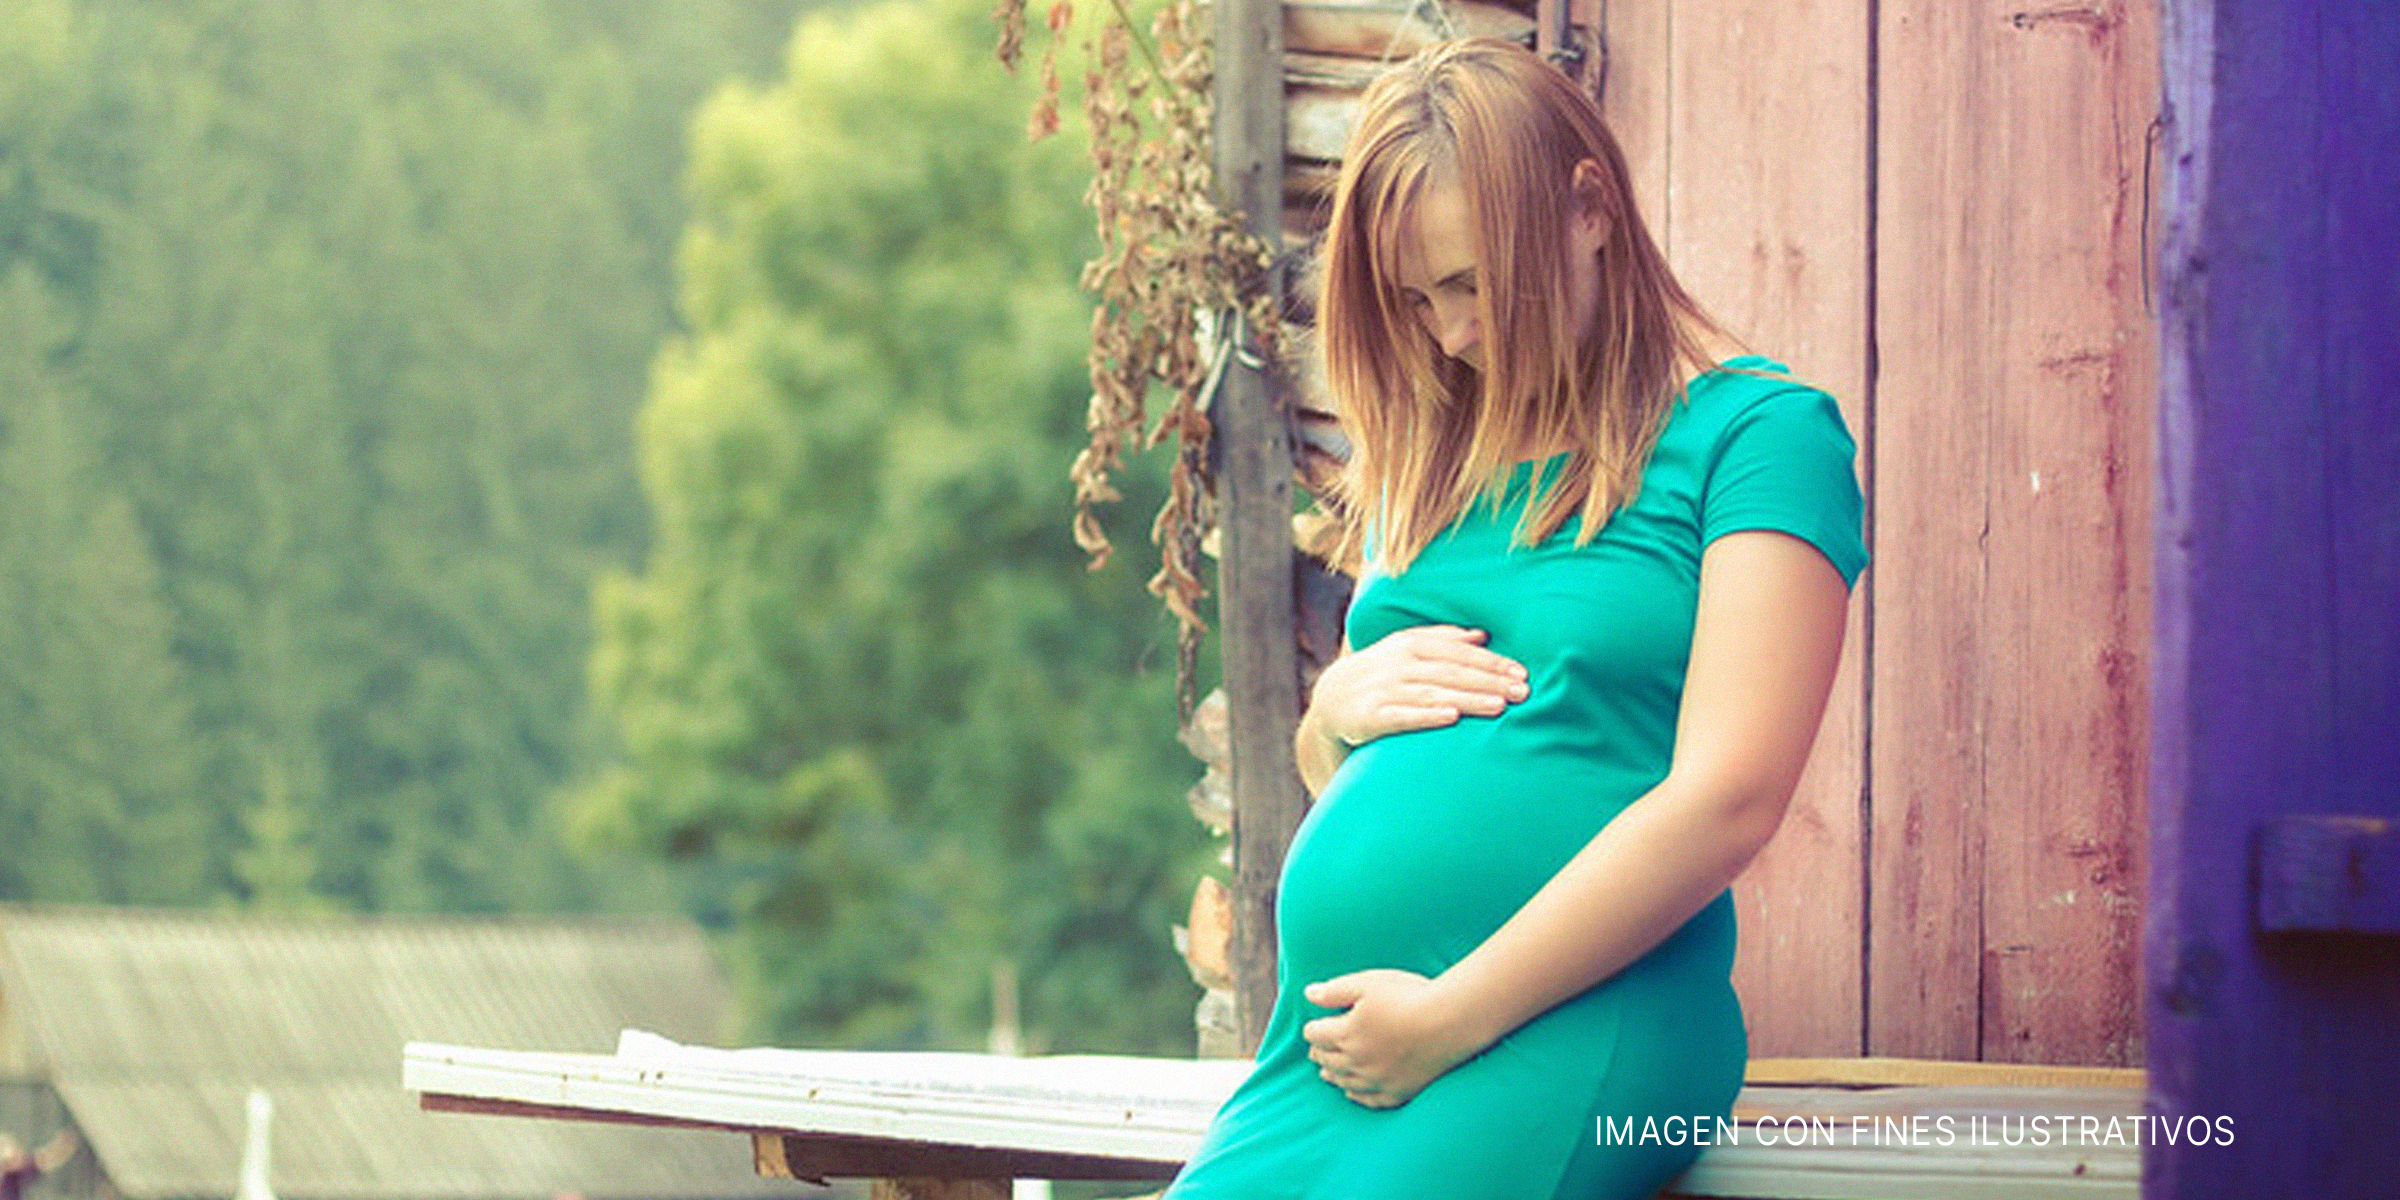 Una mujer embarazada sujetando su barriguita | Foto: Flickr.com/Juanedc (CC BY 2.0)